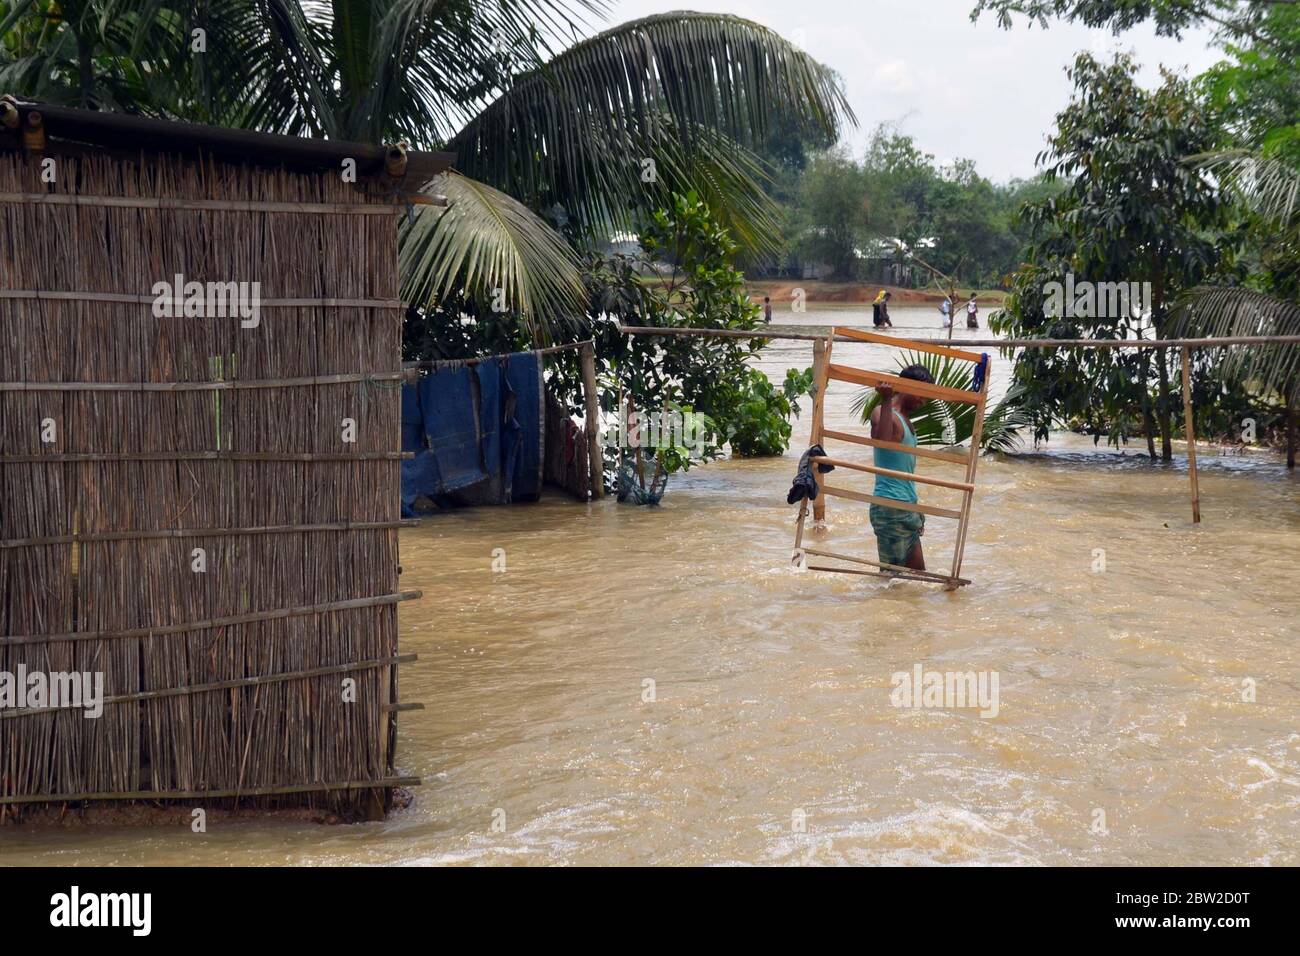 Nagaon, Assam / India - 29 2020 maggio: UNA vittima colpita da alluvione che guastava l'acqua per spostare i suoi beni in un luogo sicuro a causa del costante aumento di acqua alluvione. Foto Stock